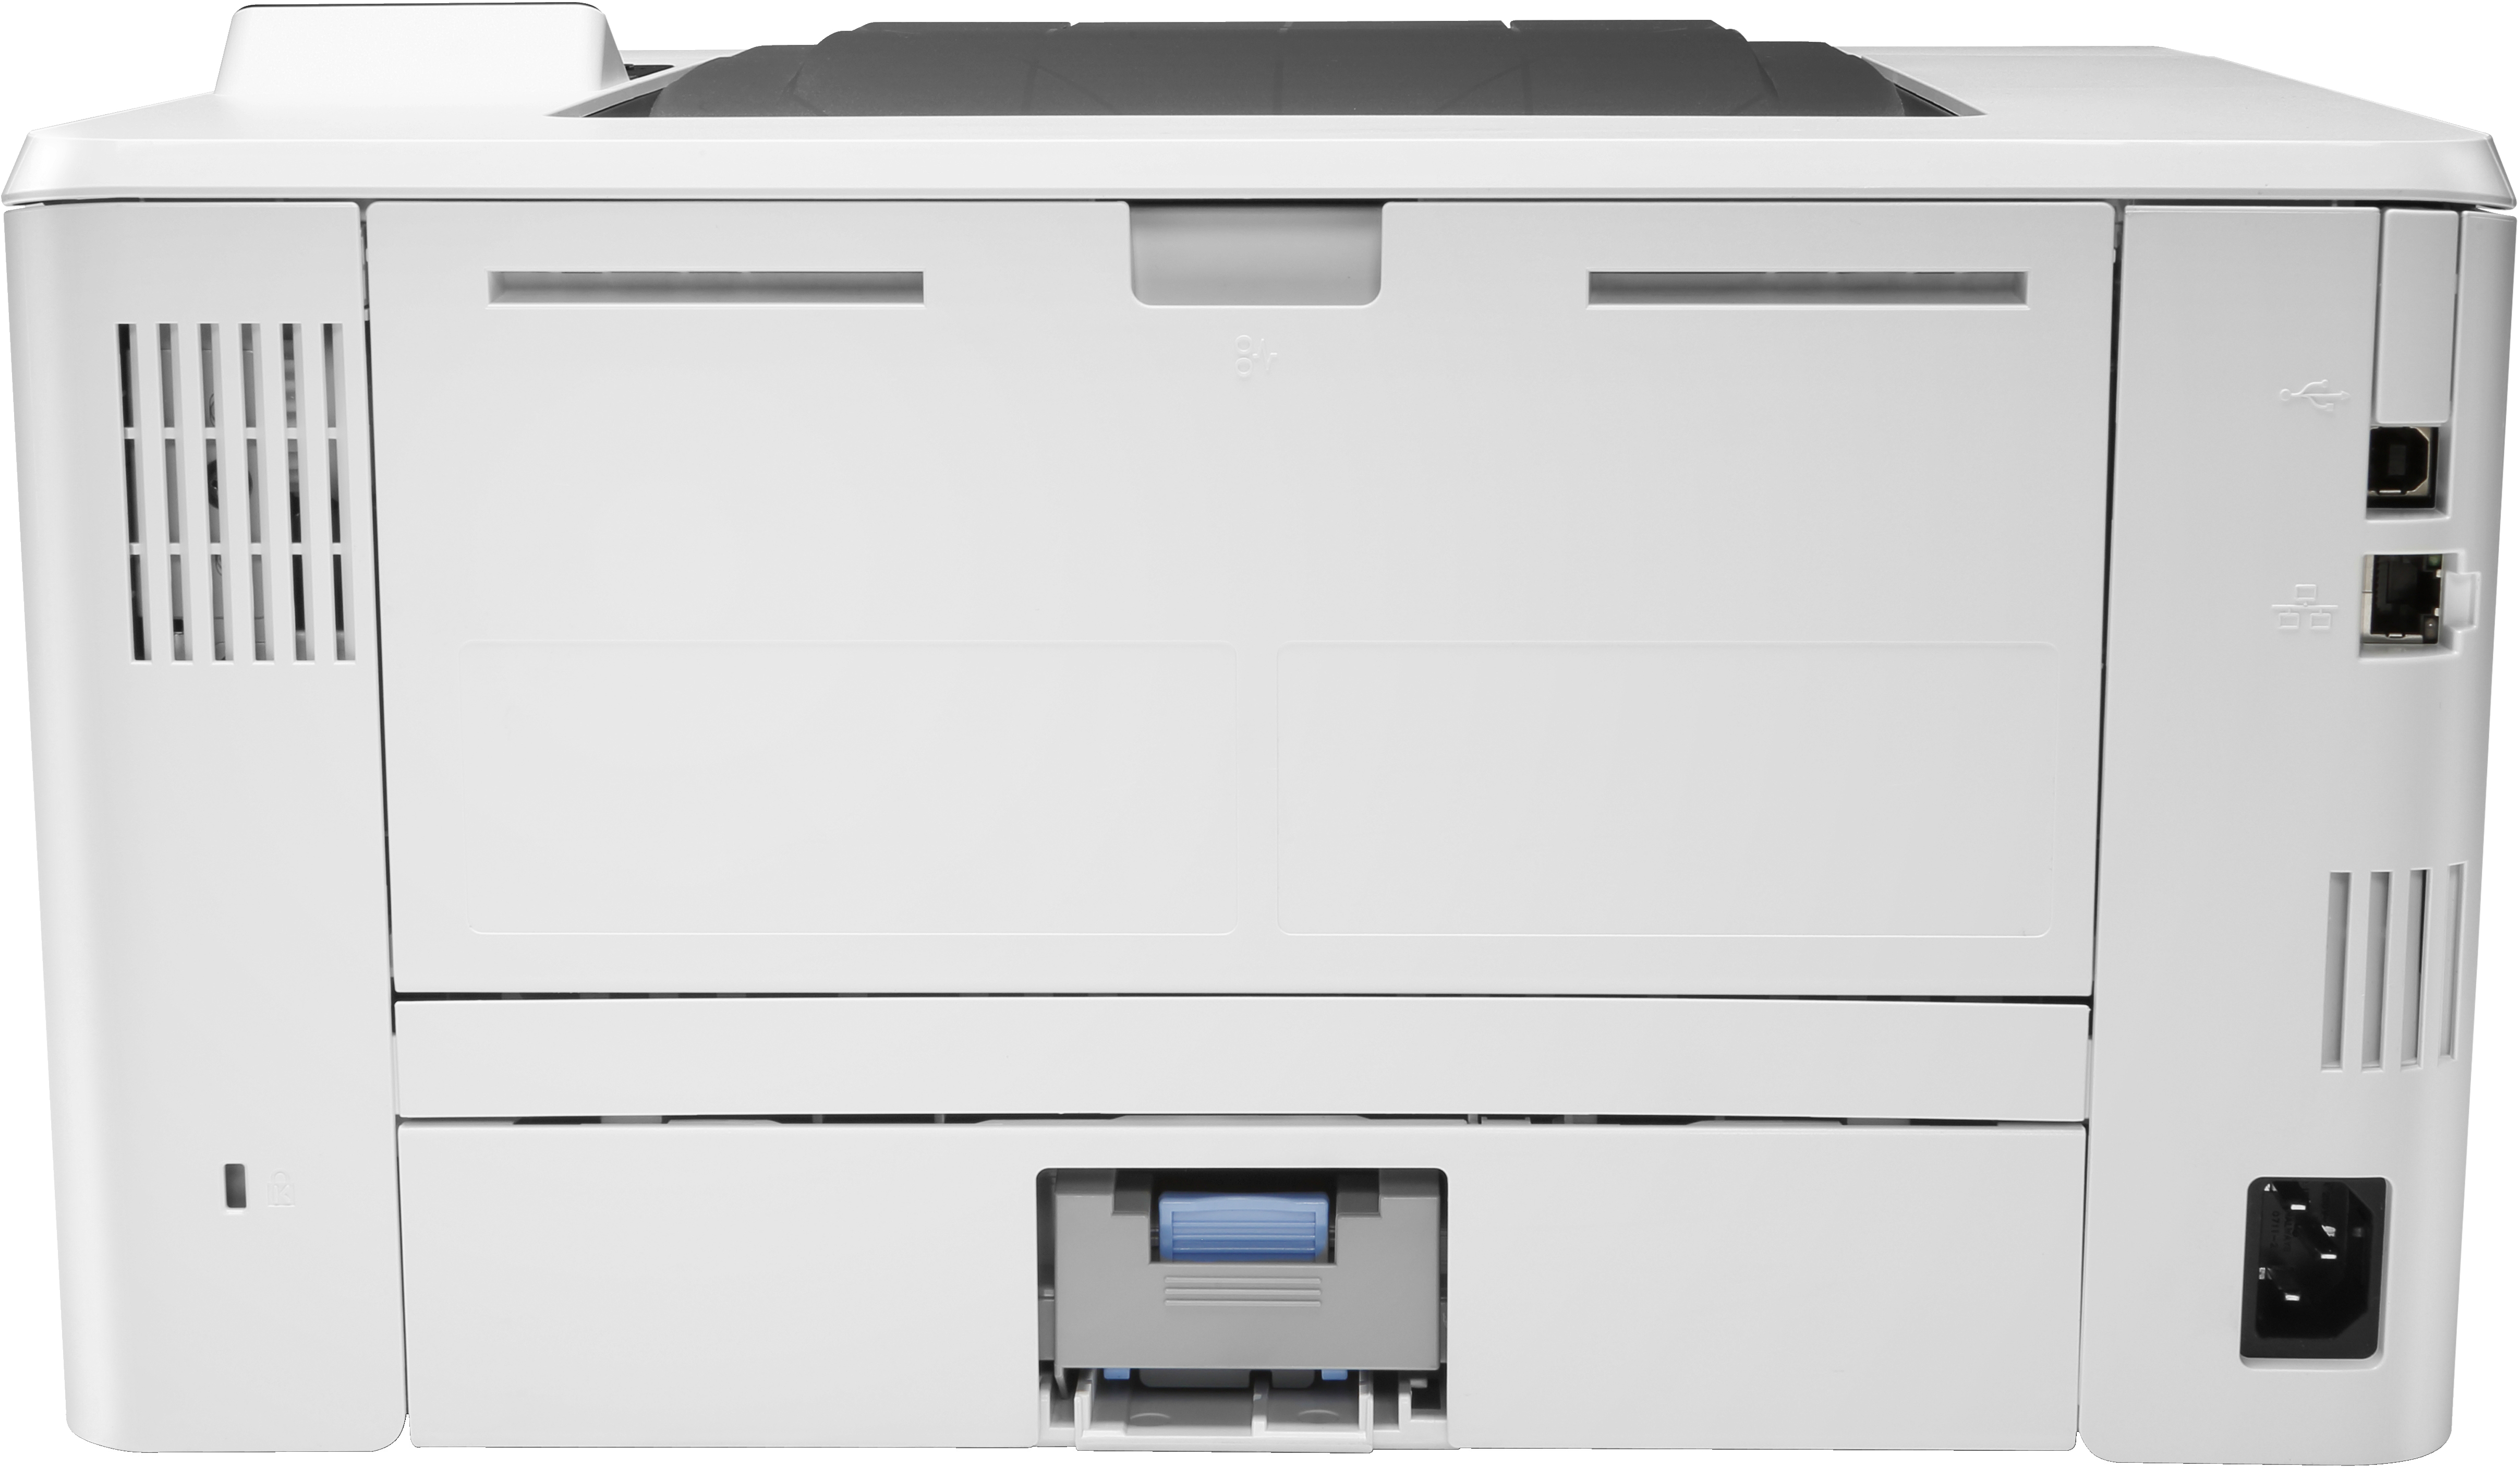 Stampante laser HP LaserJet Pro M404dn, Stampa, Elevata velocità i stampa della prima pagina; dimensioni compatte; risparmio energetico; avanzate funzionalità di sicurezza [W1A53A]